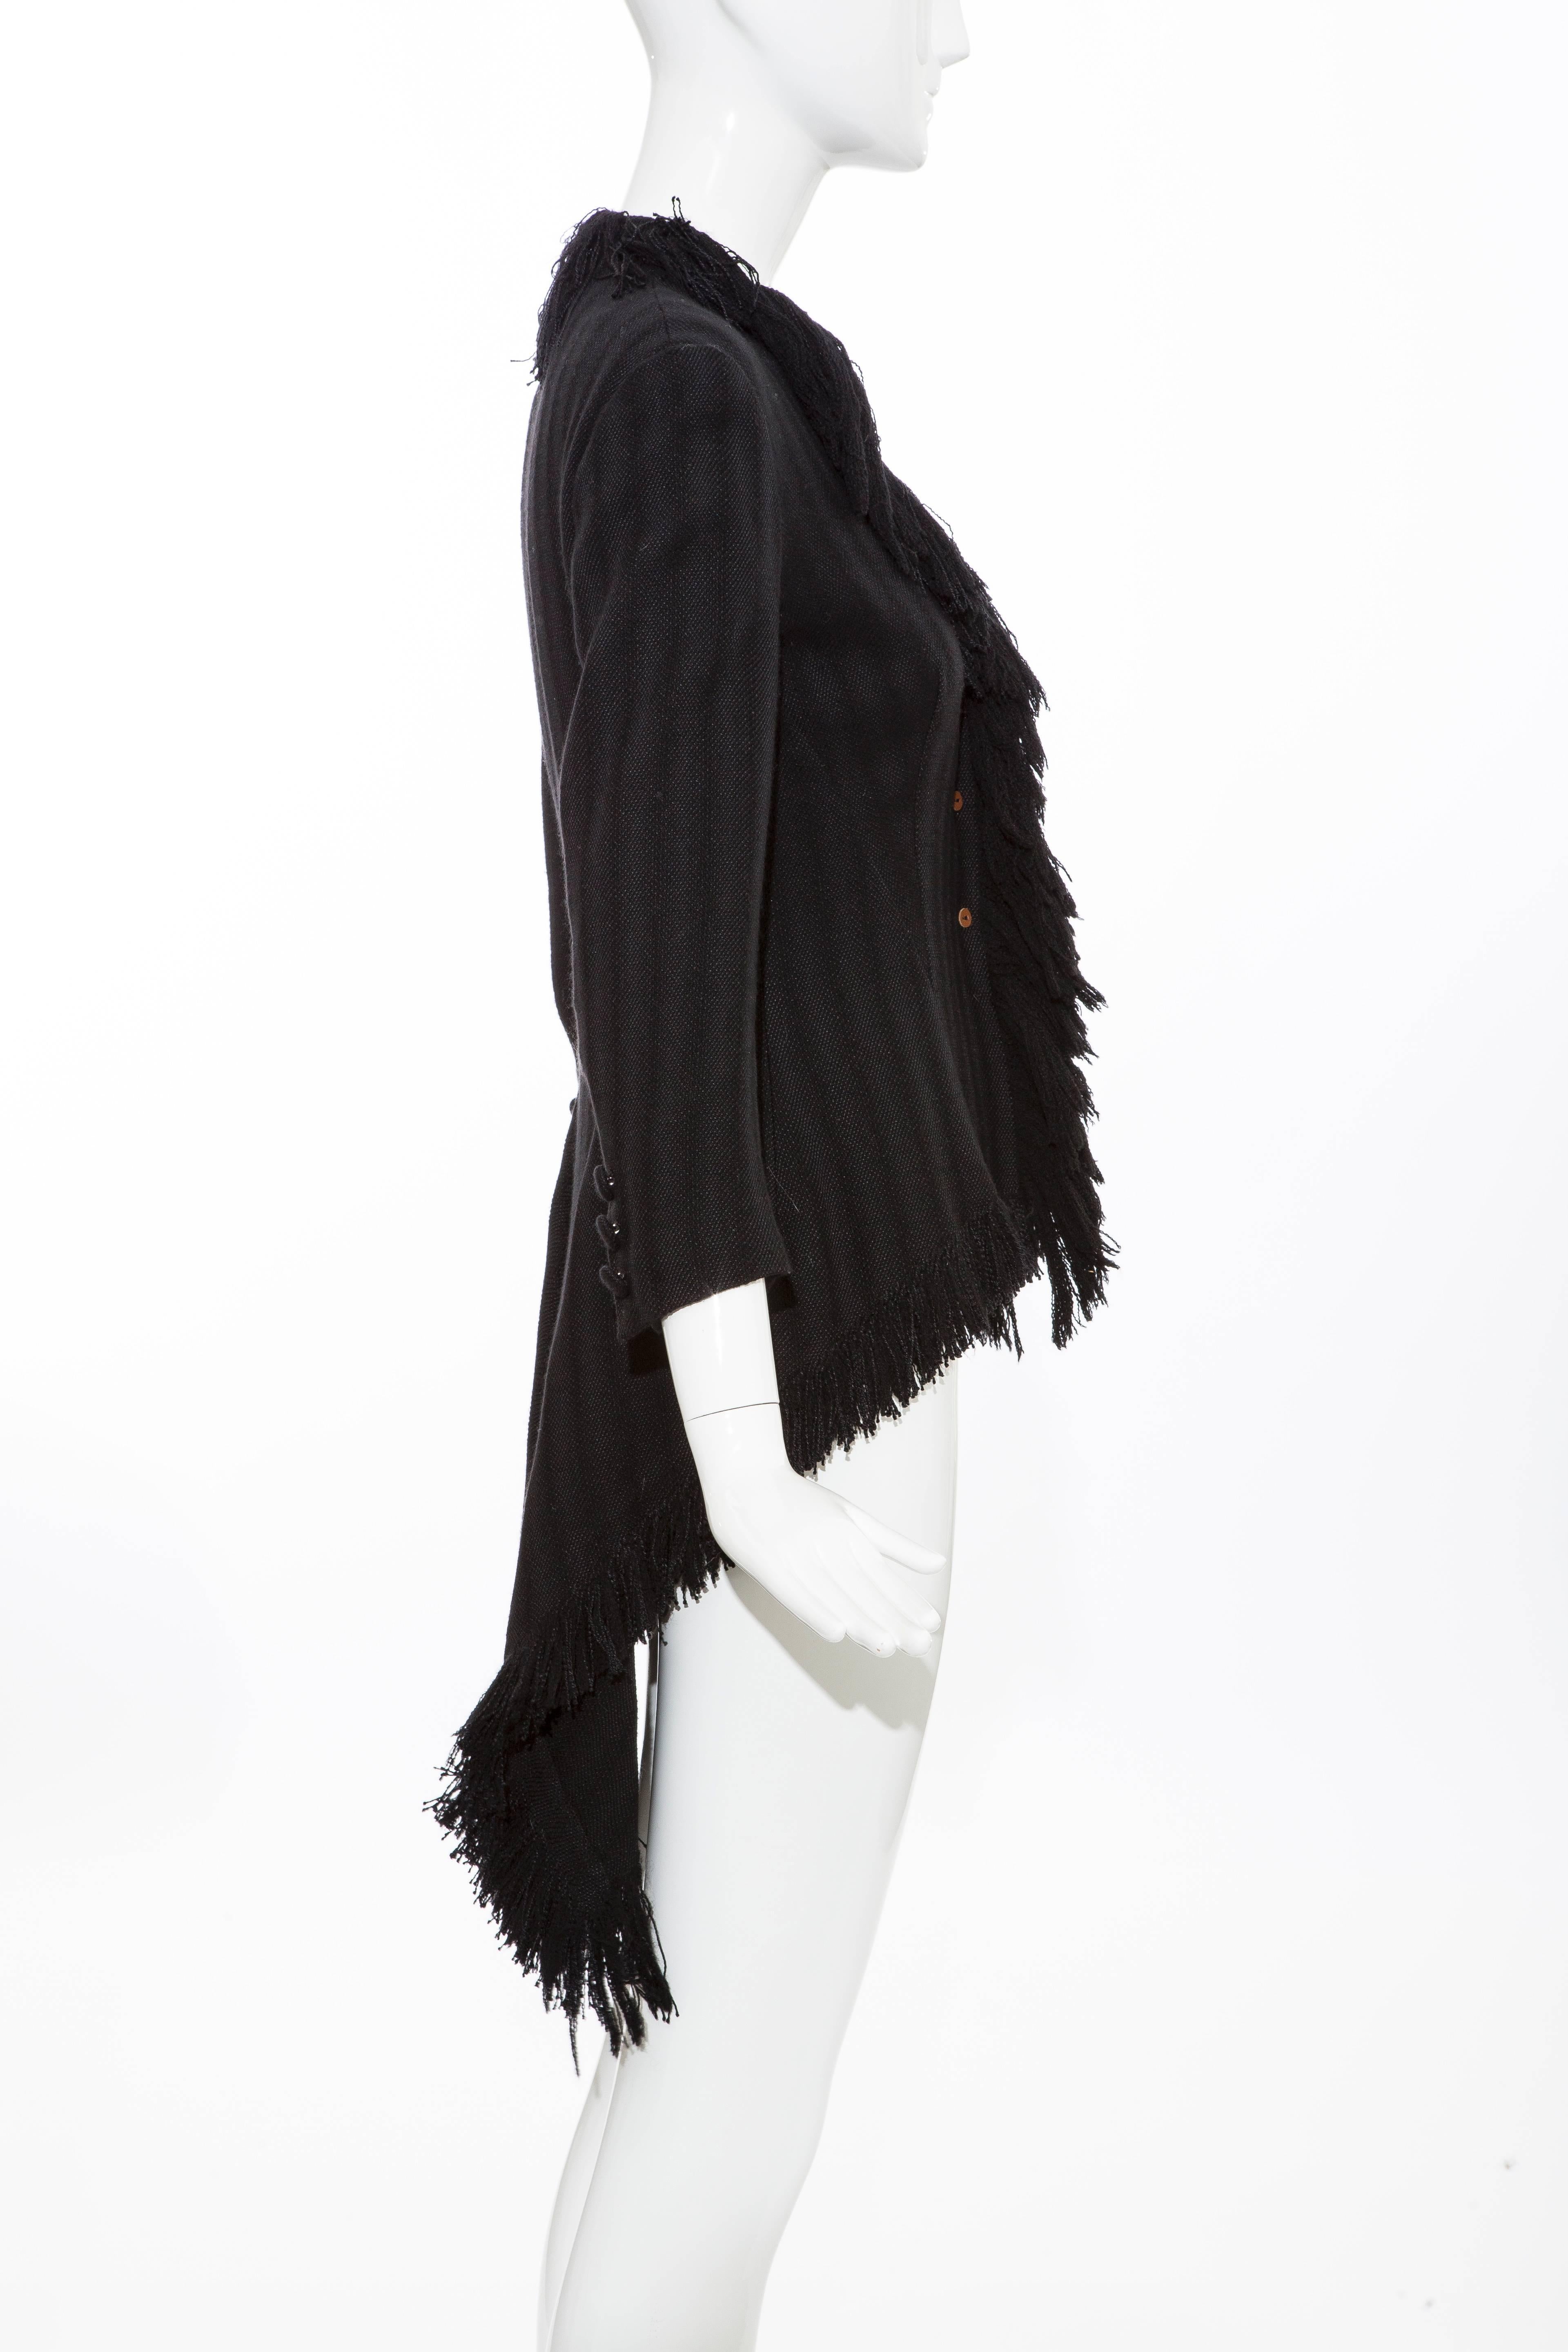 Yohji Yamamoto Black Silk Wool Tweed Cutaway Jacket With Fringe Trim, Fall 2013 For Sale 1